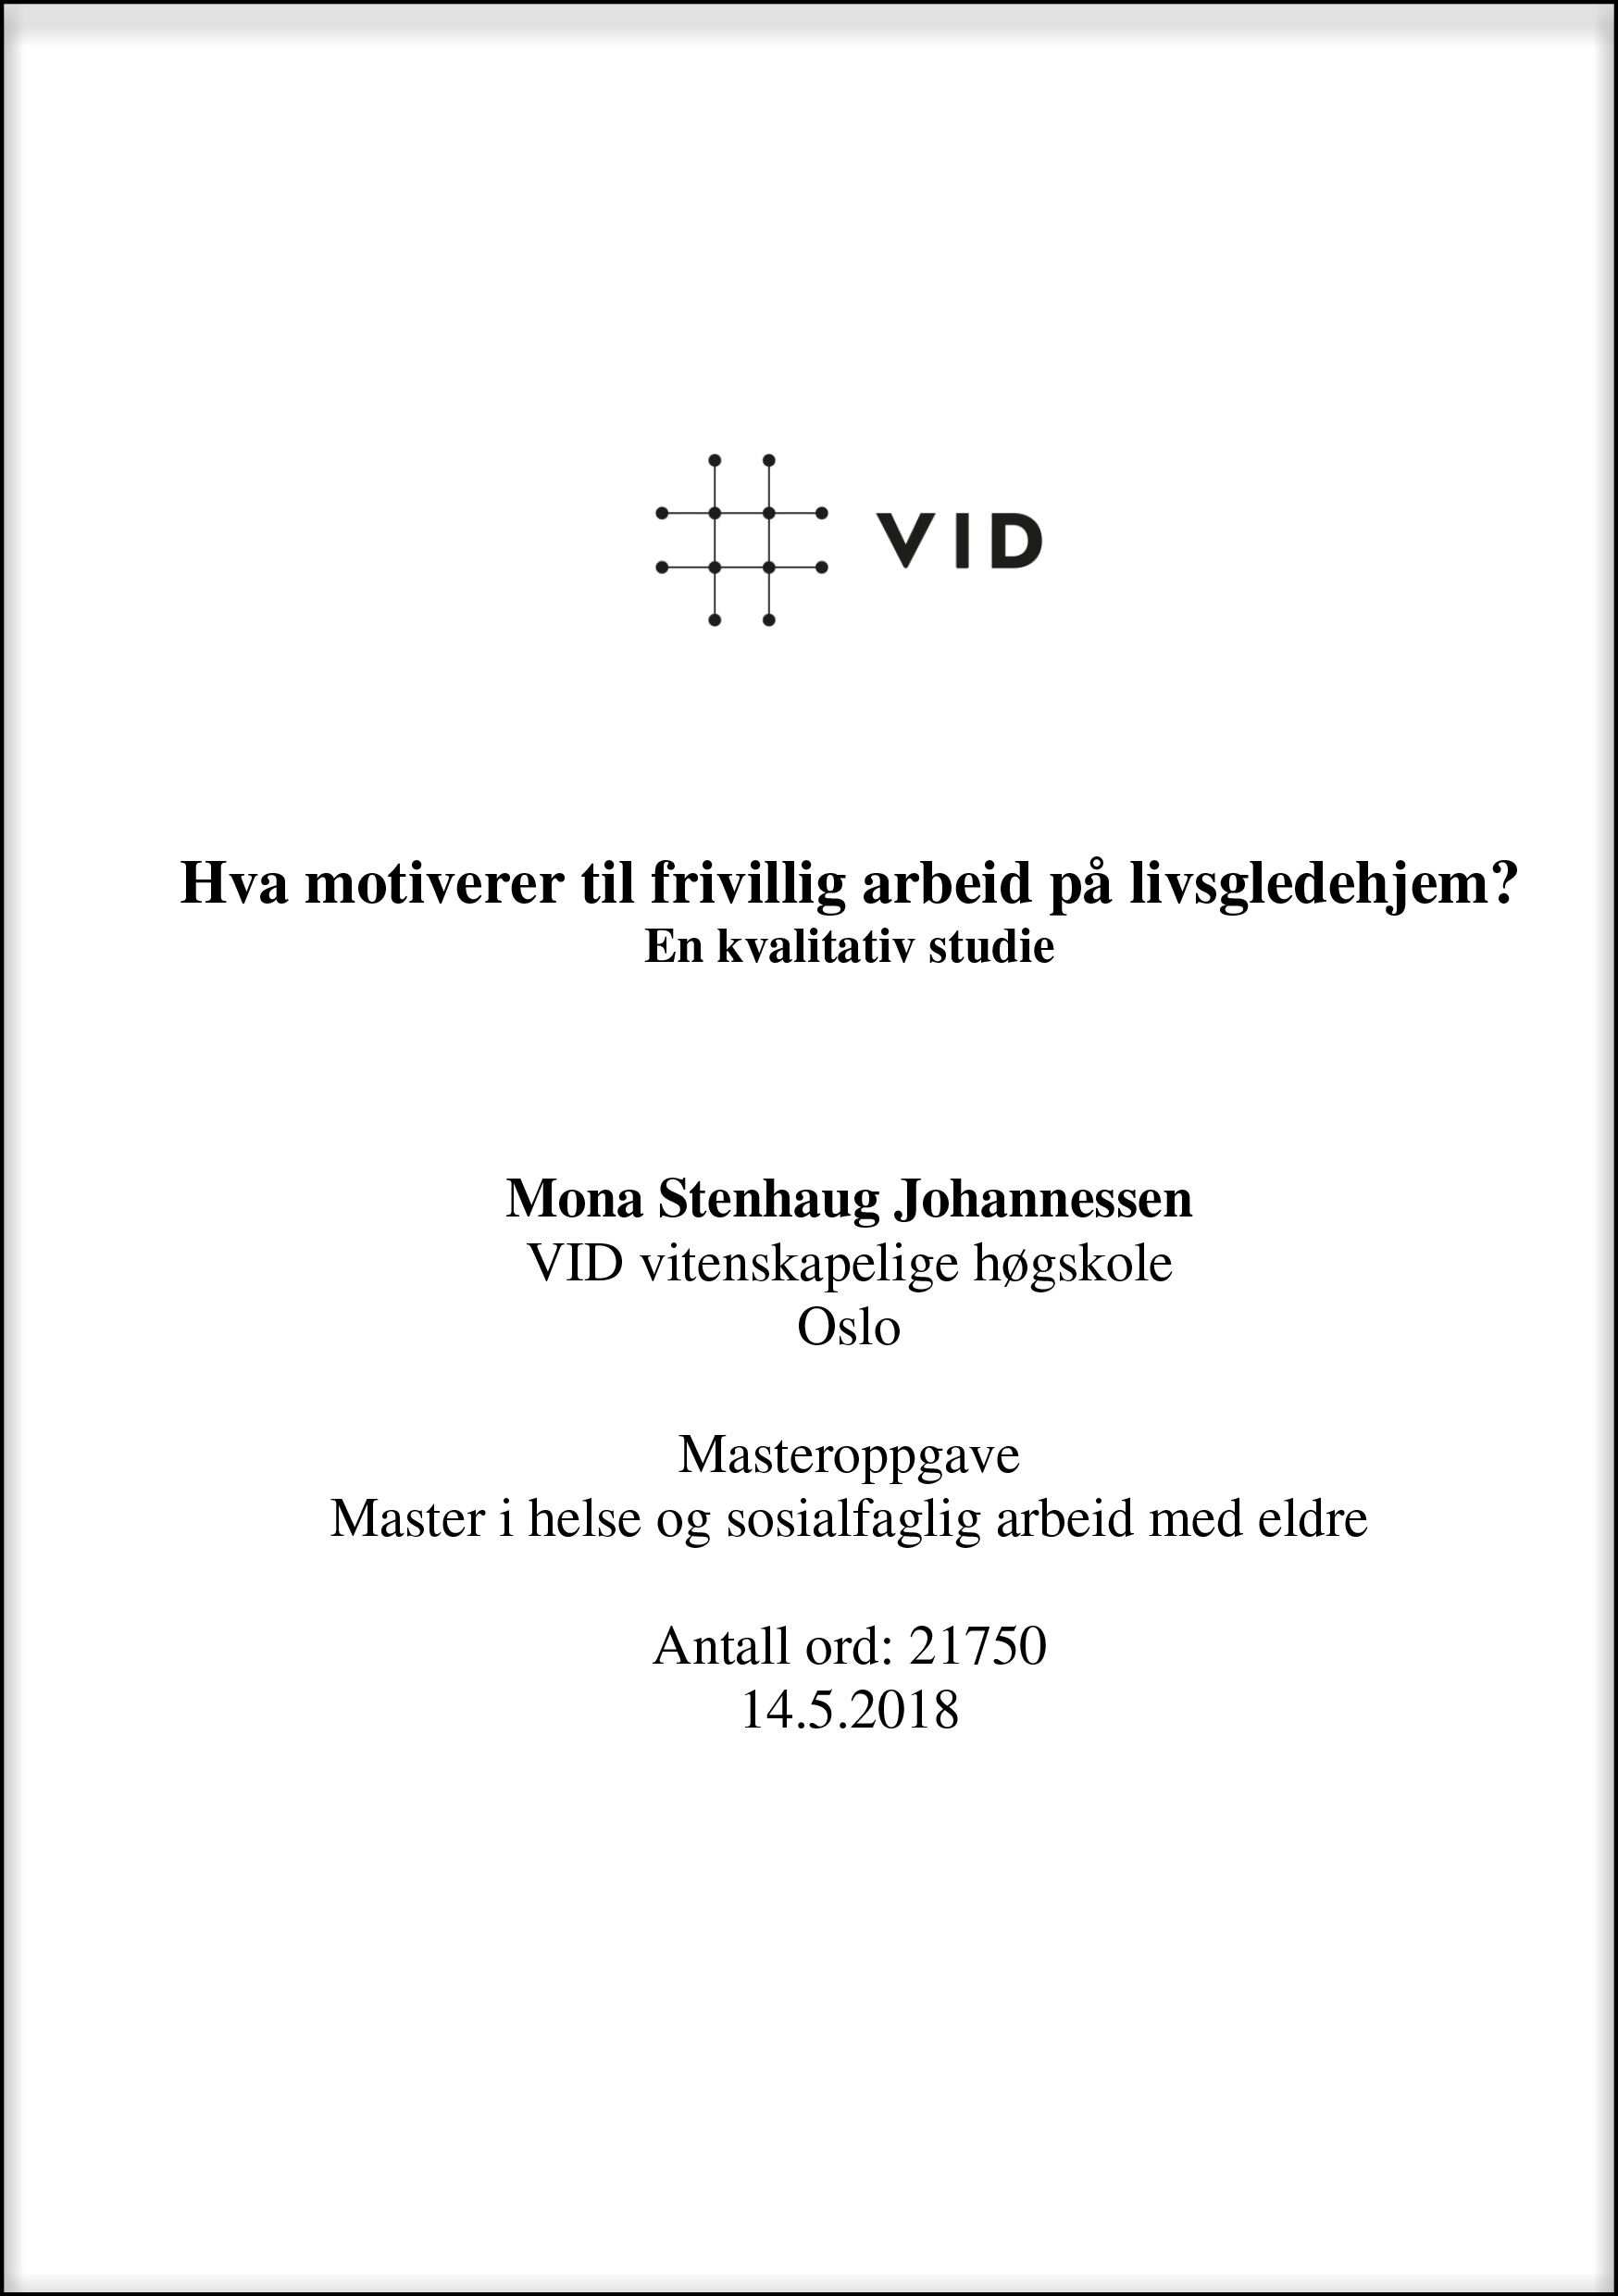 Masteroppgave: Hva motiverer til frivillig arbeid på livsgledehjem? En kvalitativ studie av Mona S. Johannessen